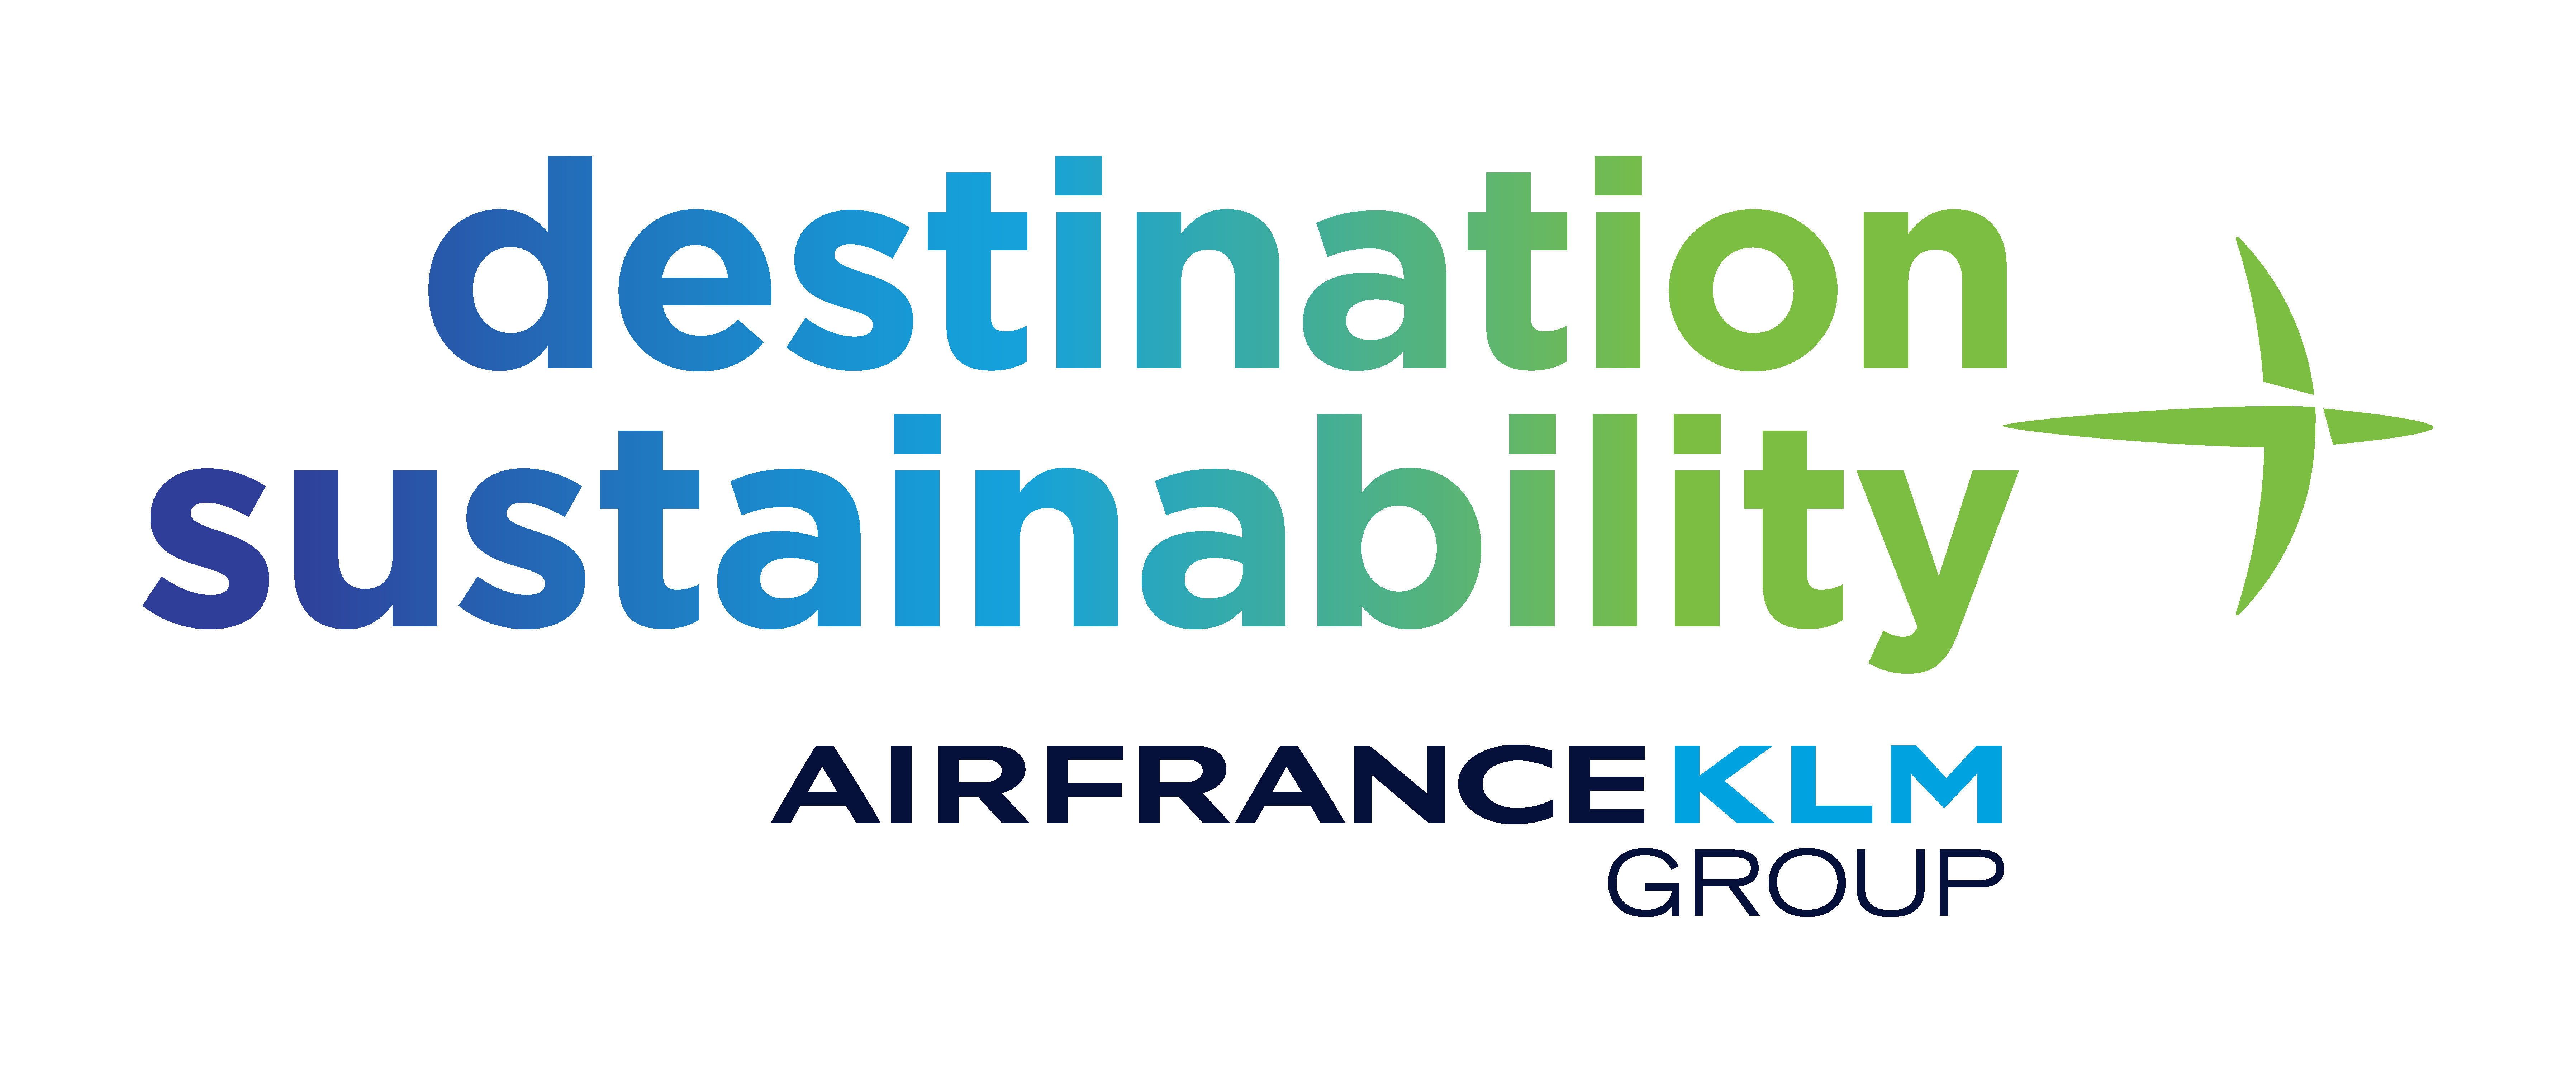 エールフランスKLMの2030年のCO2排出削減目標が
SBTiによって承認されました